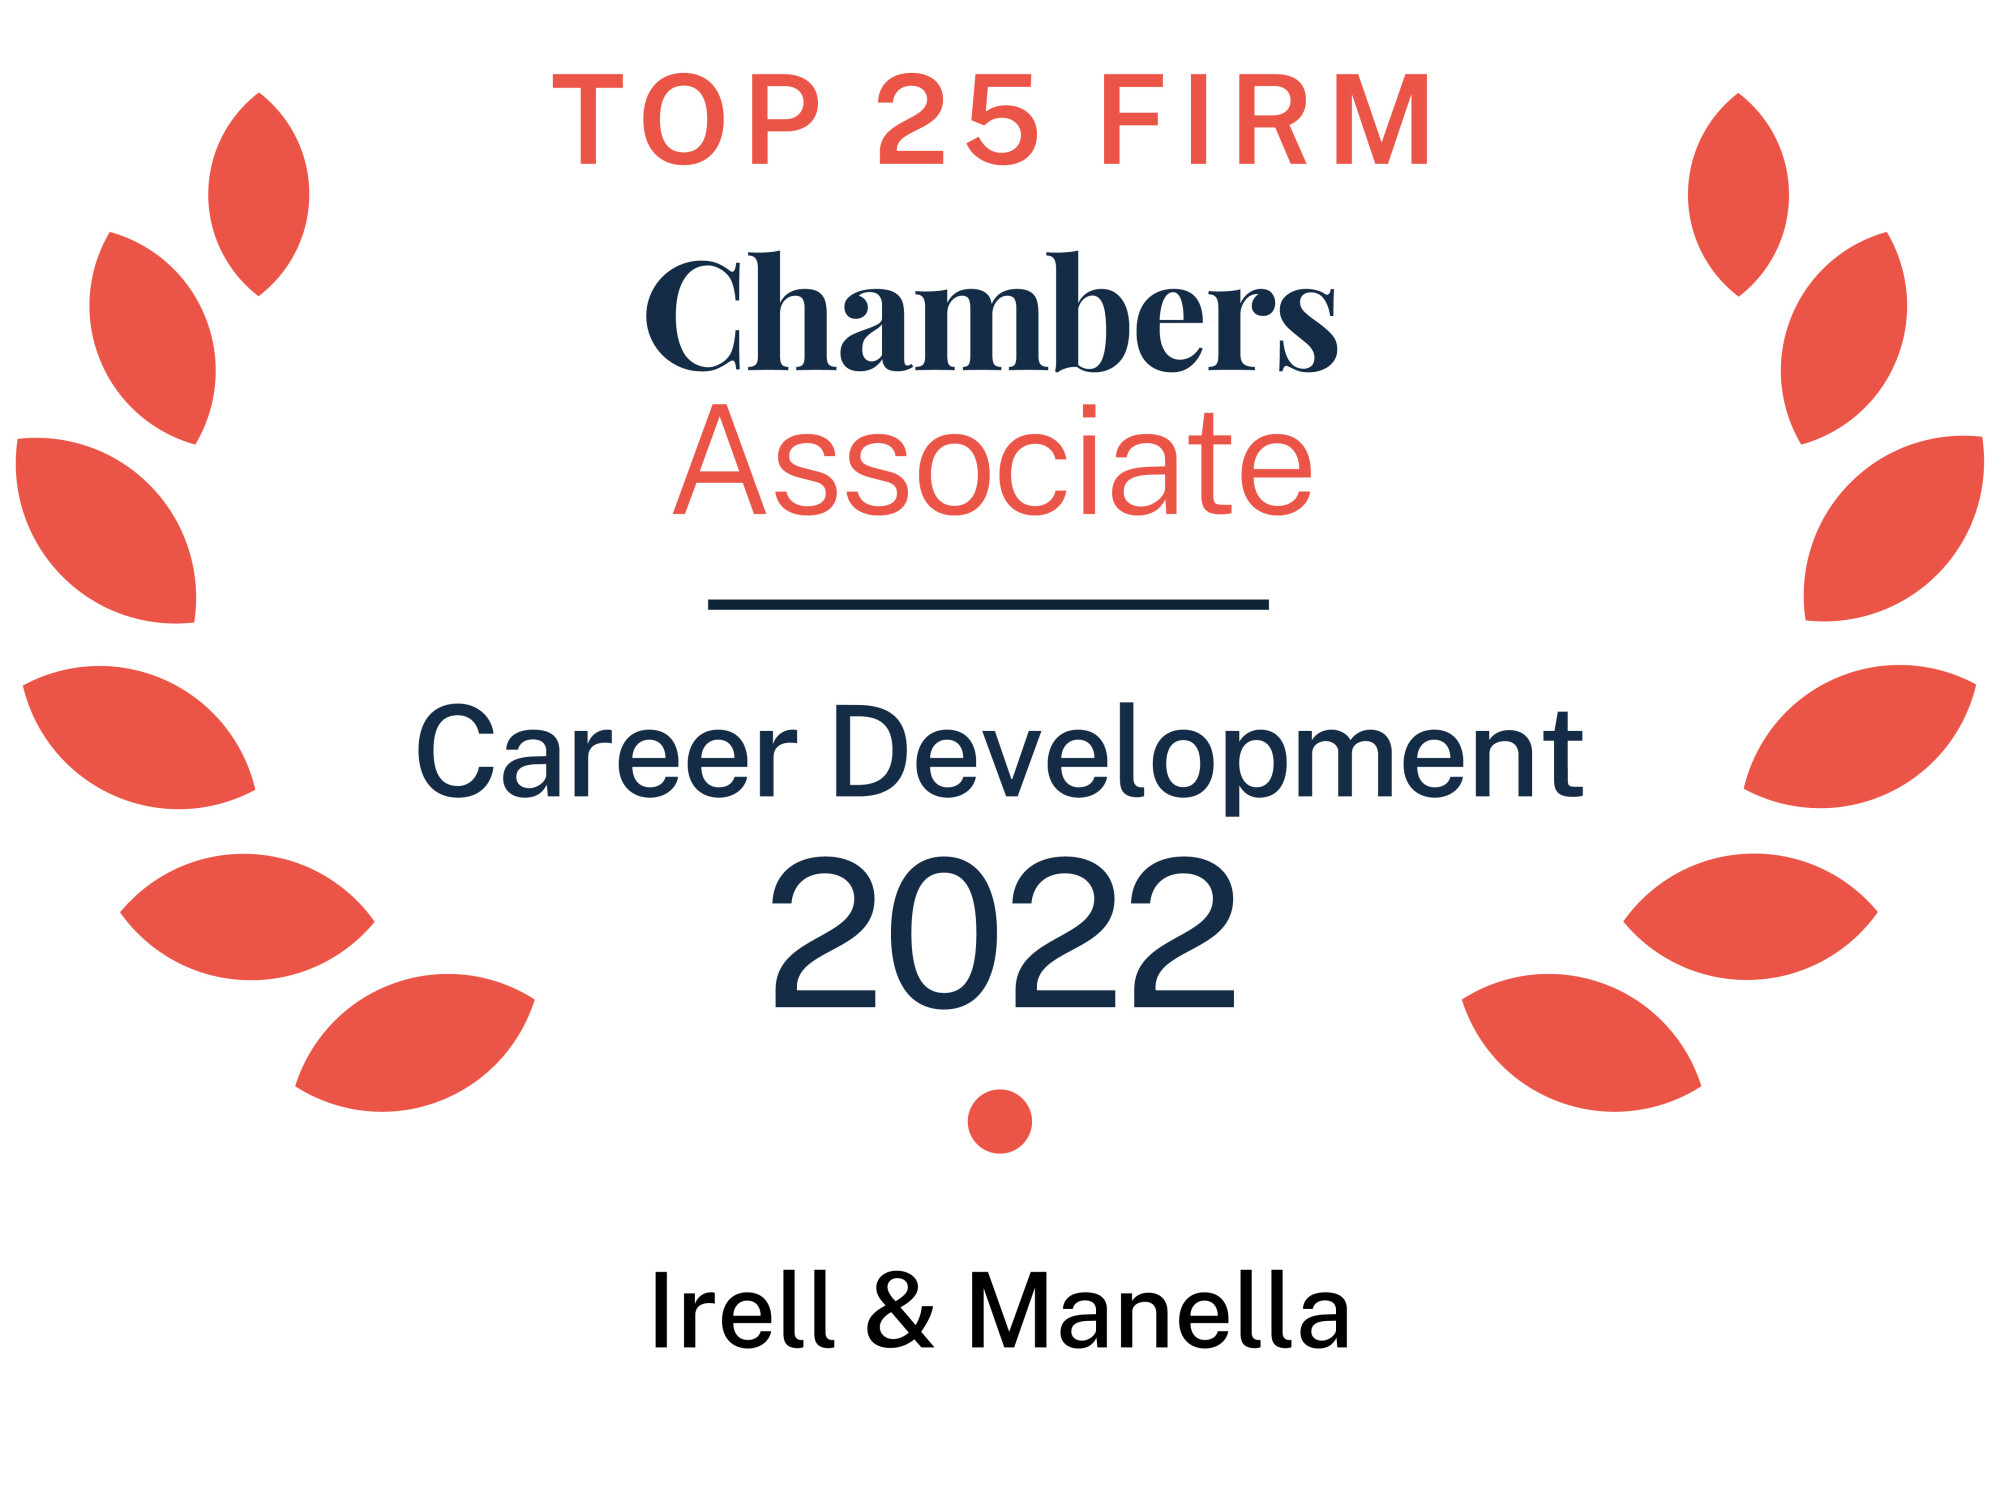 Chambers Associate Top 25 Firm Career Development